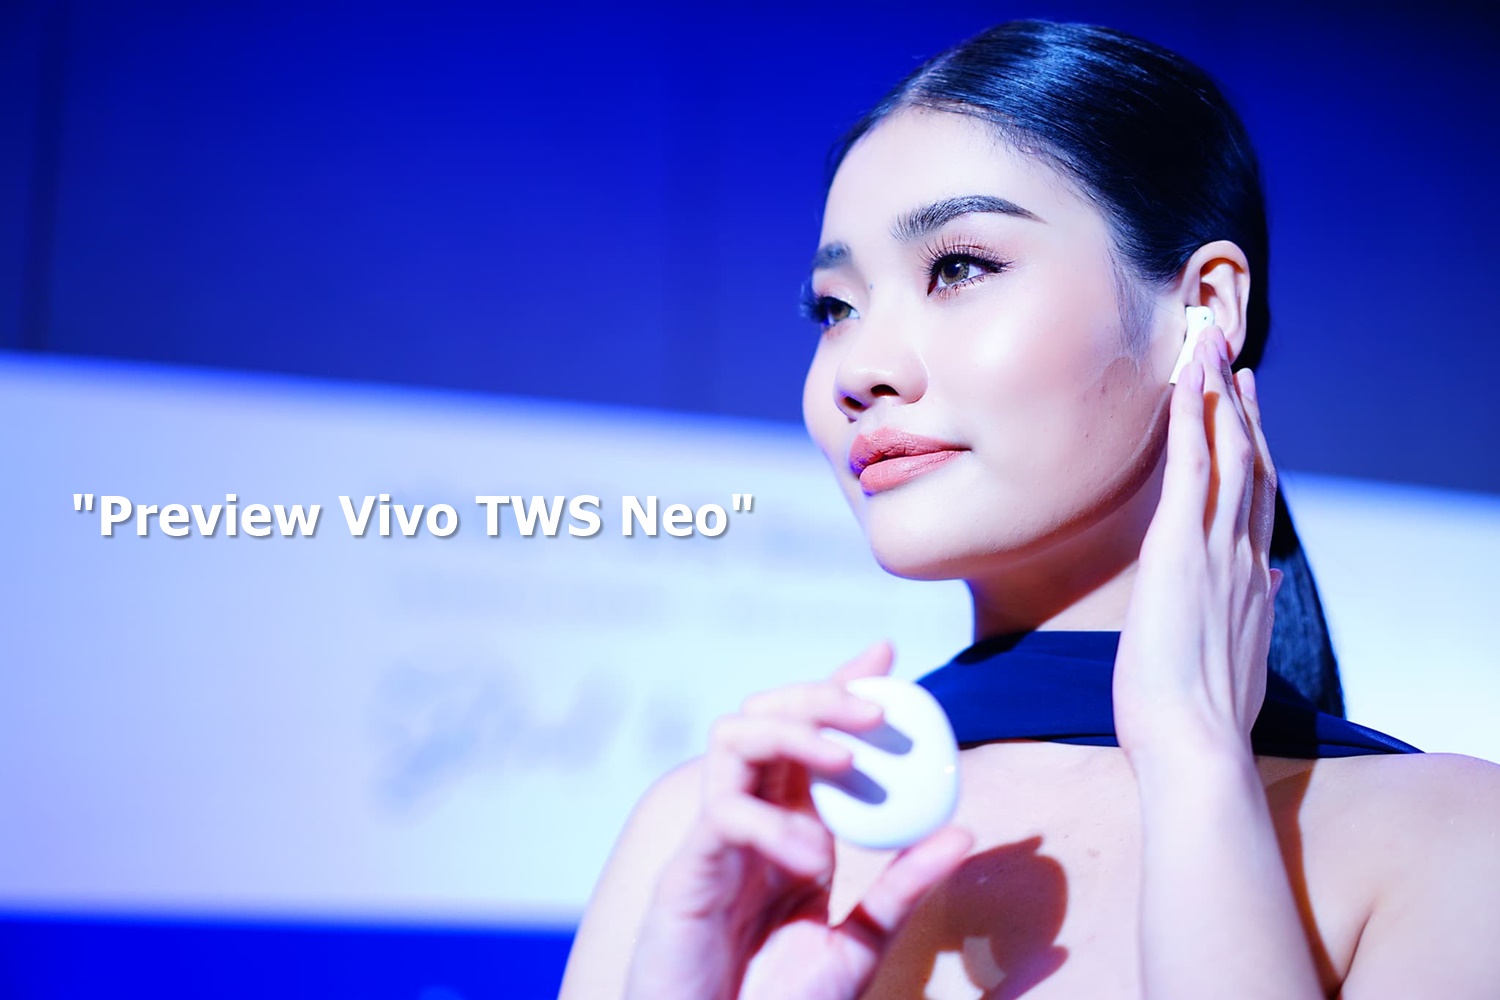 vivo tws feature | Vivo | พรีวิว Vivo TWS Neo หูฟังไร้สายระดับสตูดิโอ ไดรเวอร์ใหญ่บึ้ม 14.2mm ในราคาแค่ 2,999 บาท